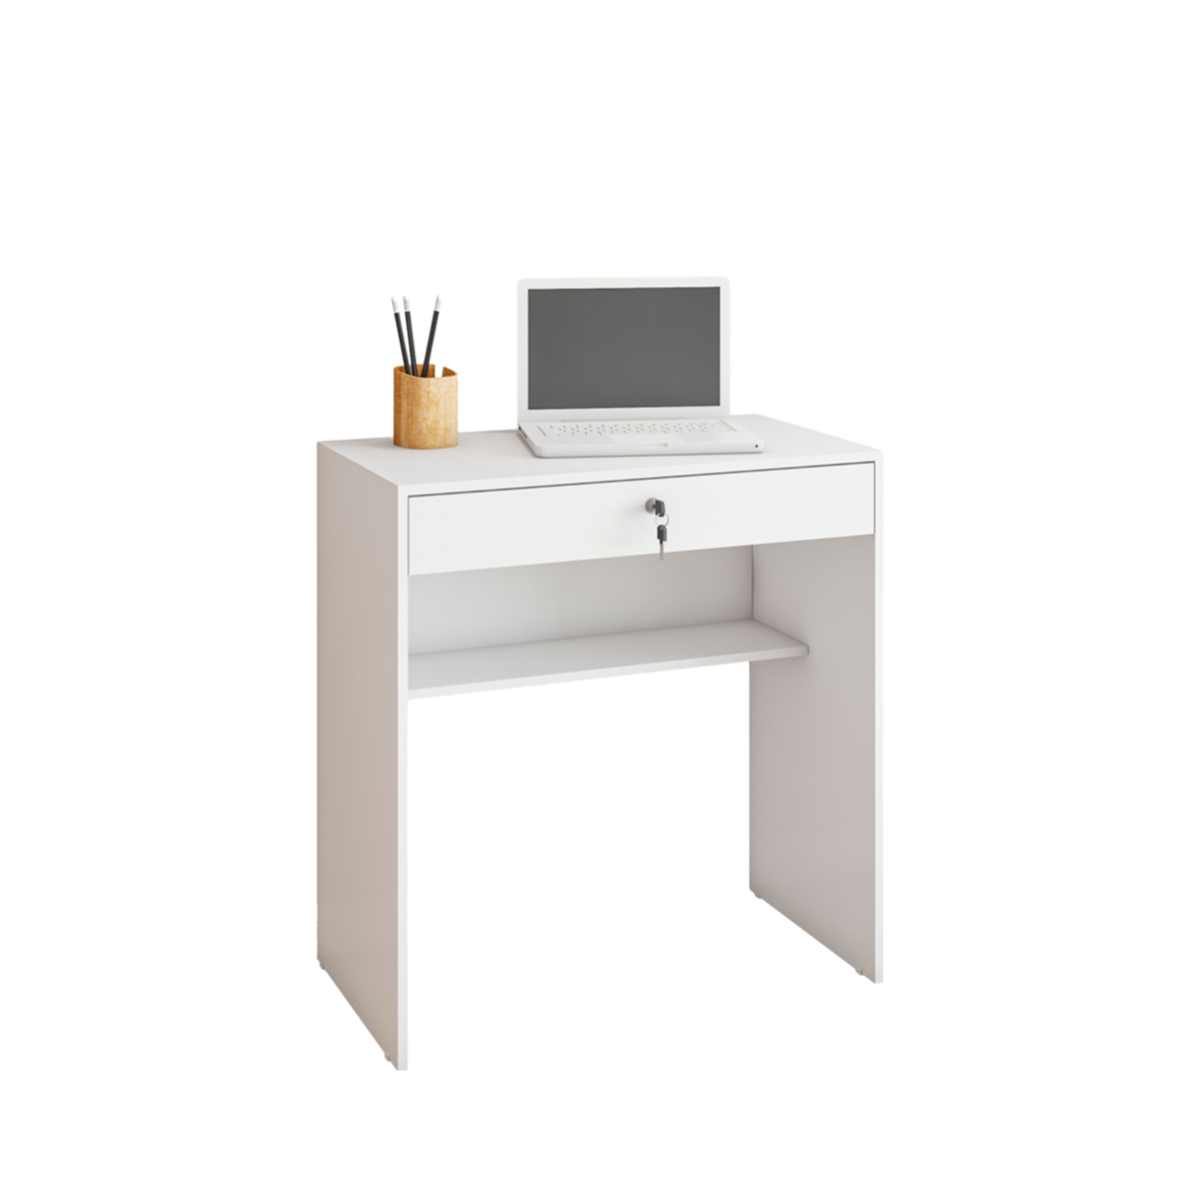 Escrivaninha Mesa para Computador Office Compacta Estudare 1 Gaveta com Chave 90cm Cor:branco